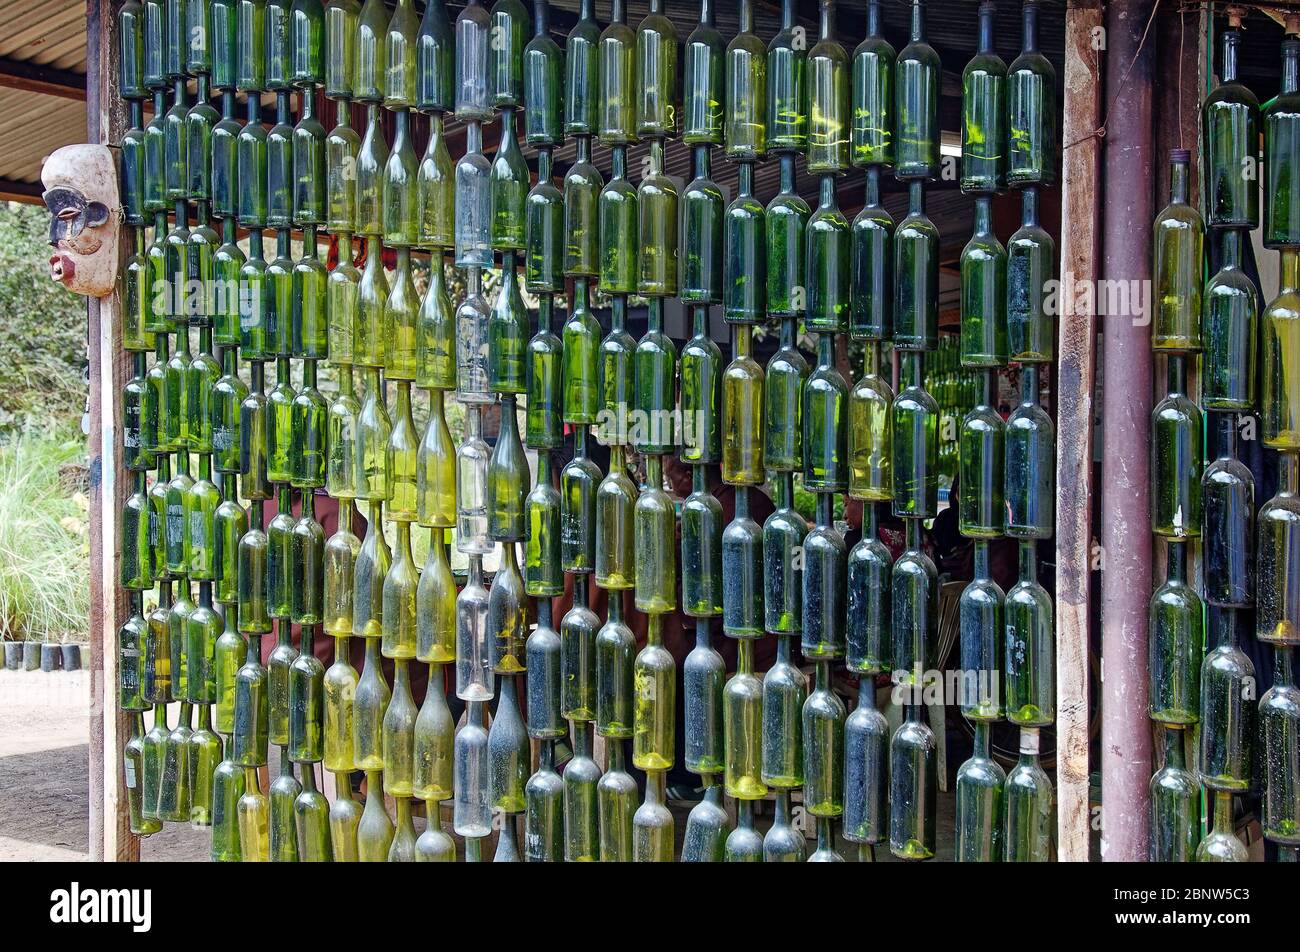 Pared de botellas colgantes fotografías imágenes de alta resolución Alamy